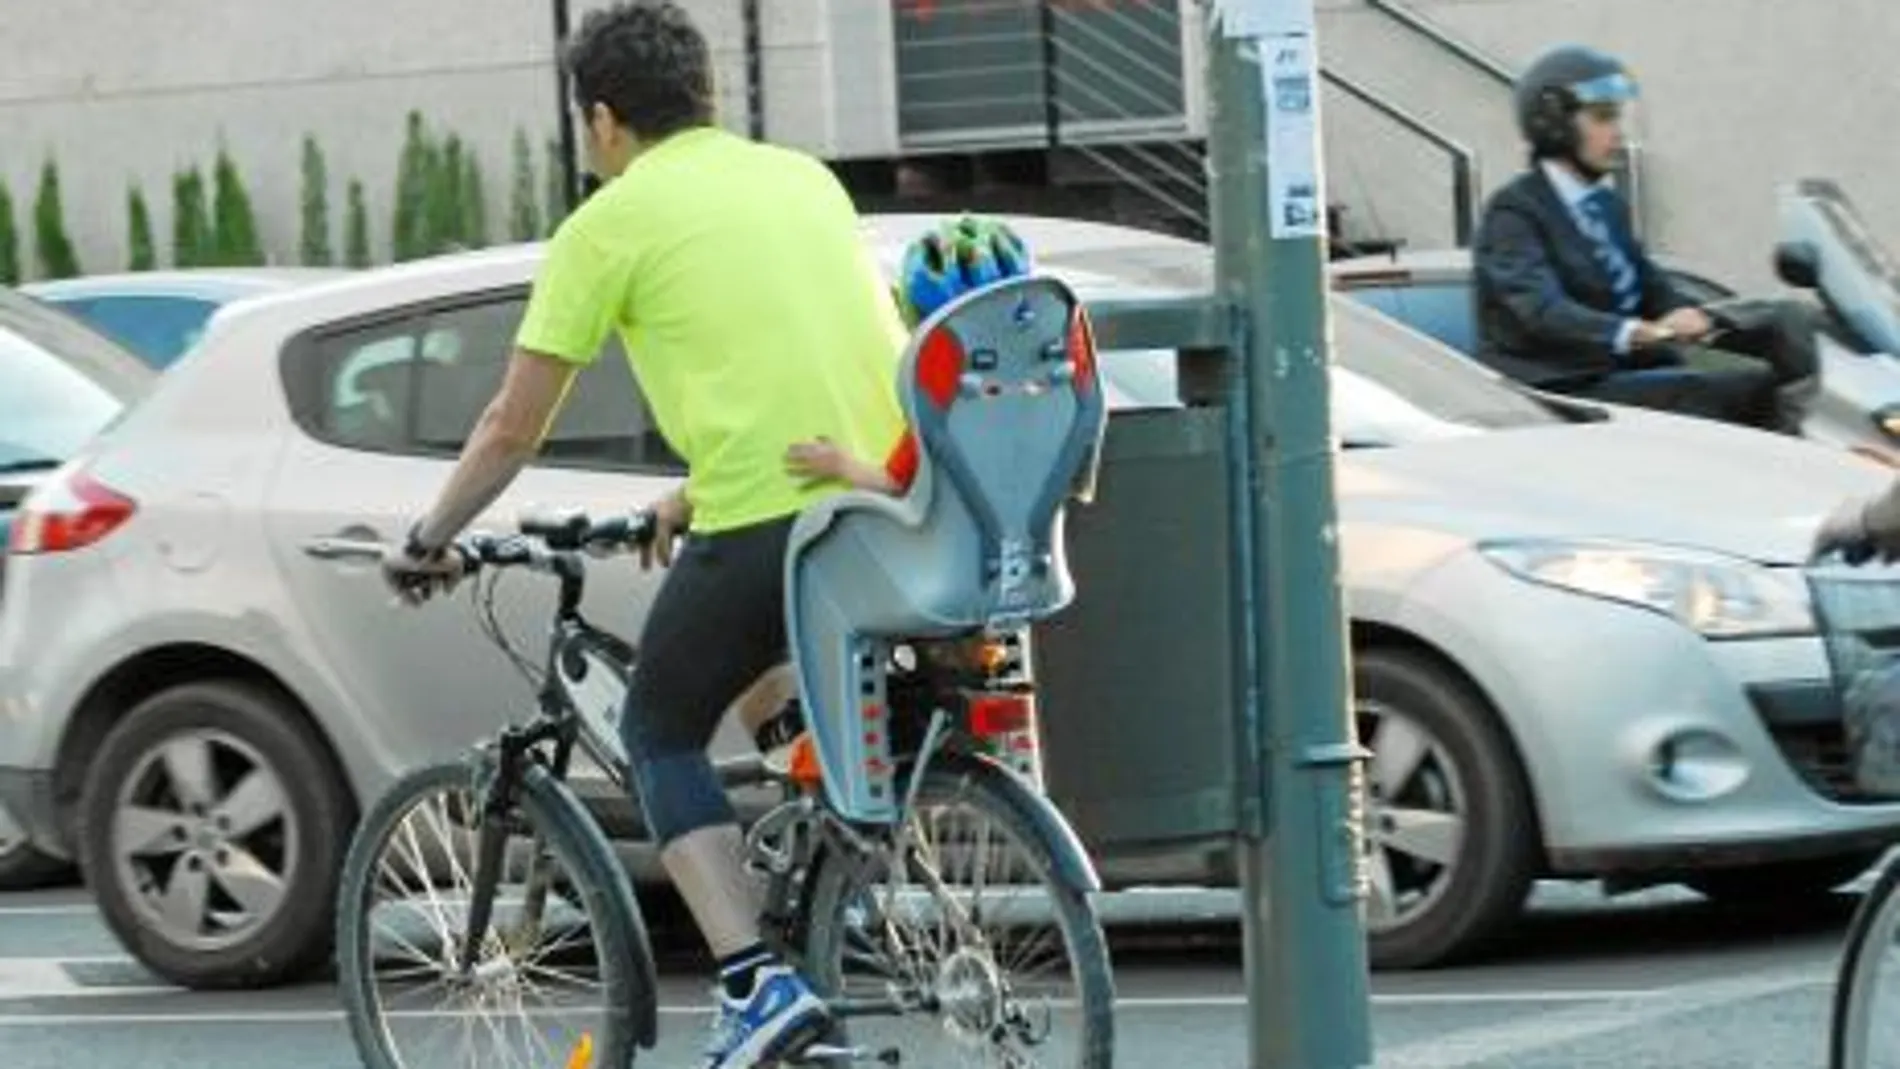 Si no hay carril-bici, irán por la calzada en sentido de la circulación